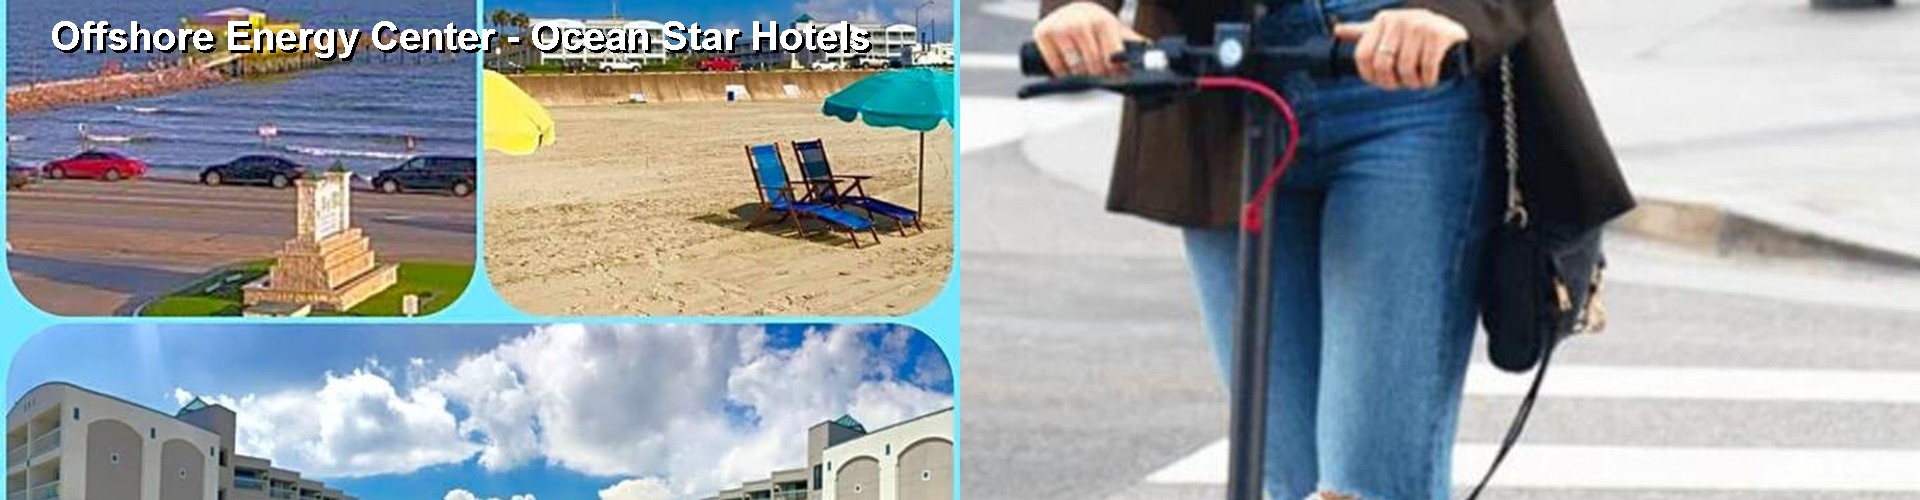 5 Best Hotels near Offshore Energy Center - Ocean Star